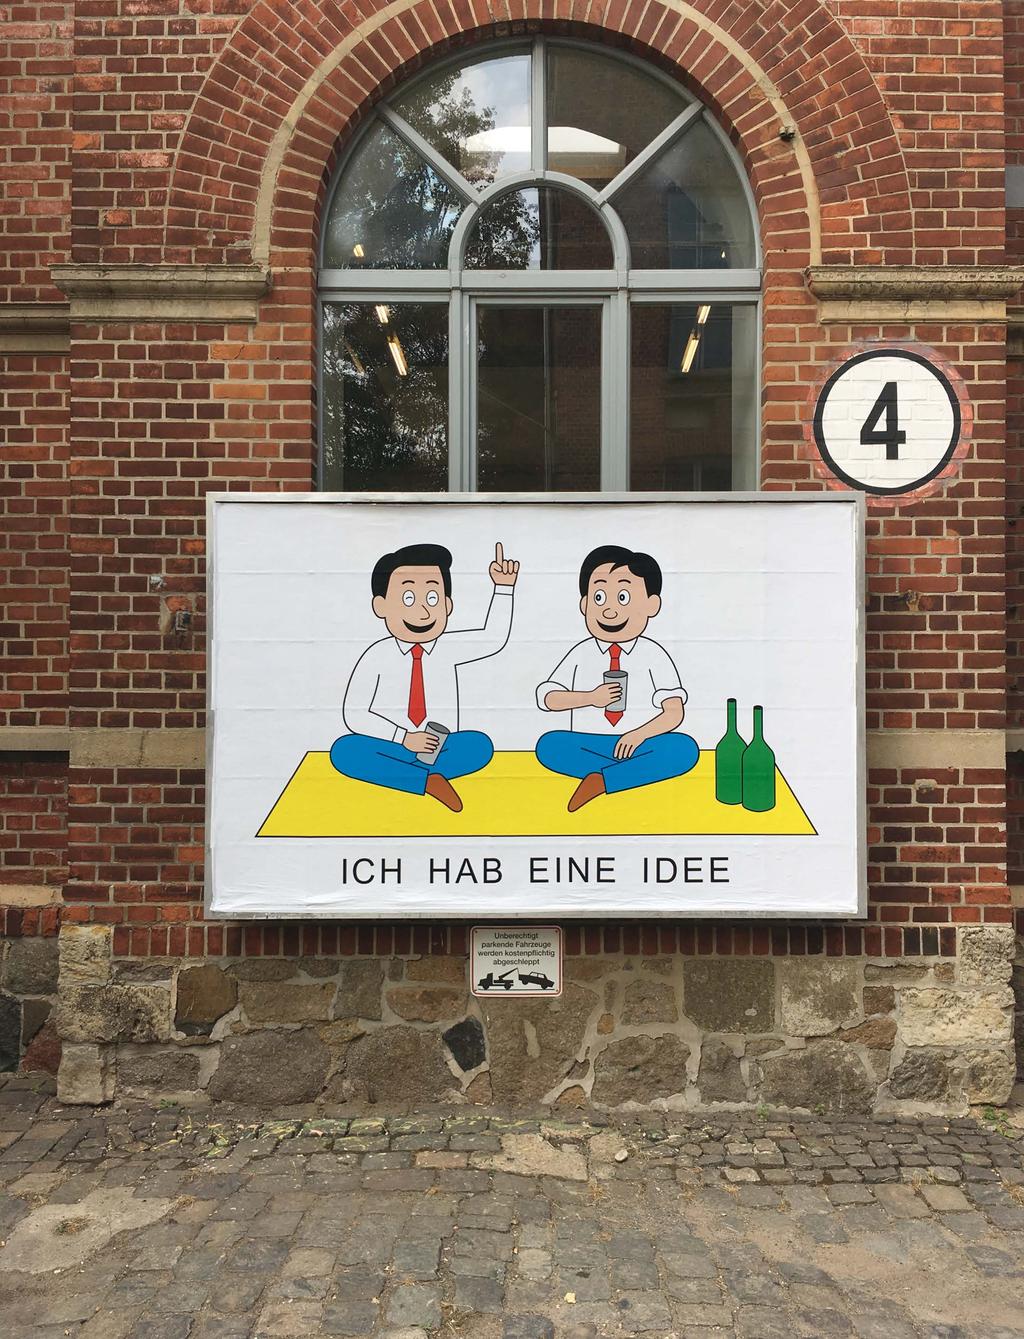 ICH HAB EINE IDEE Display, Halle 4, Spinnerei, Leipzig, 2016 Zwei junge Männer trinken Wein auf einer Picknickdecke.